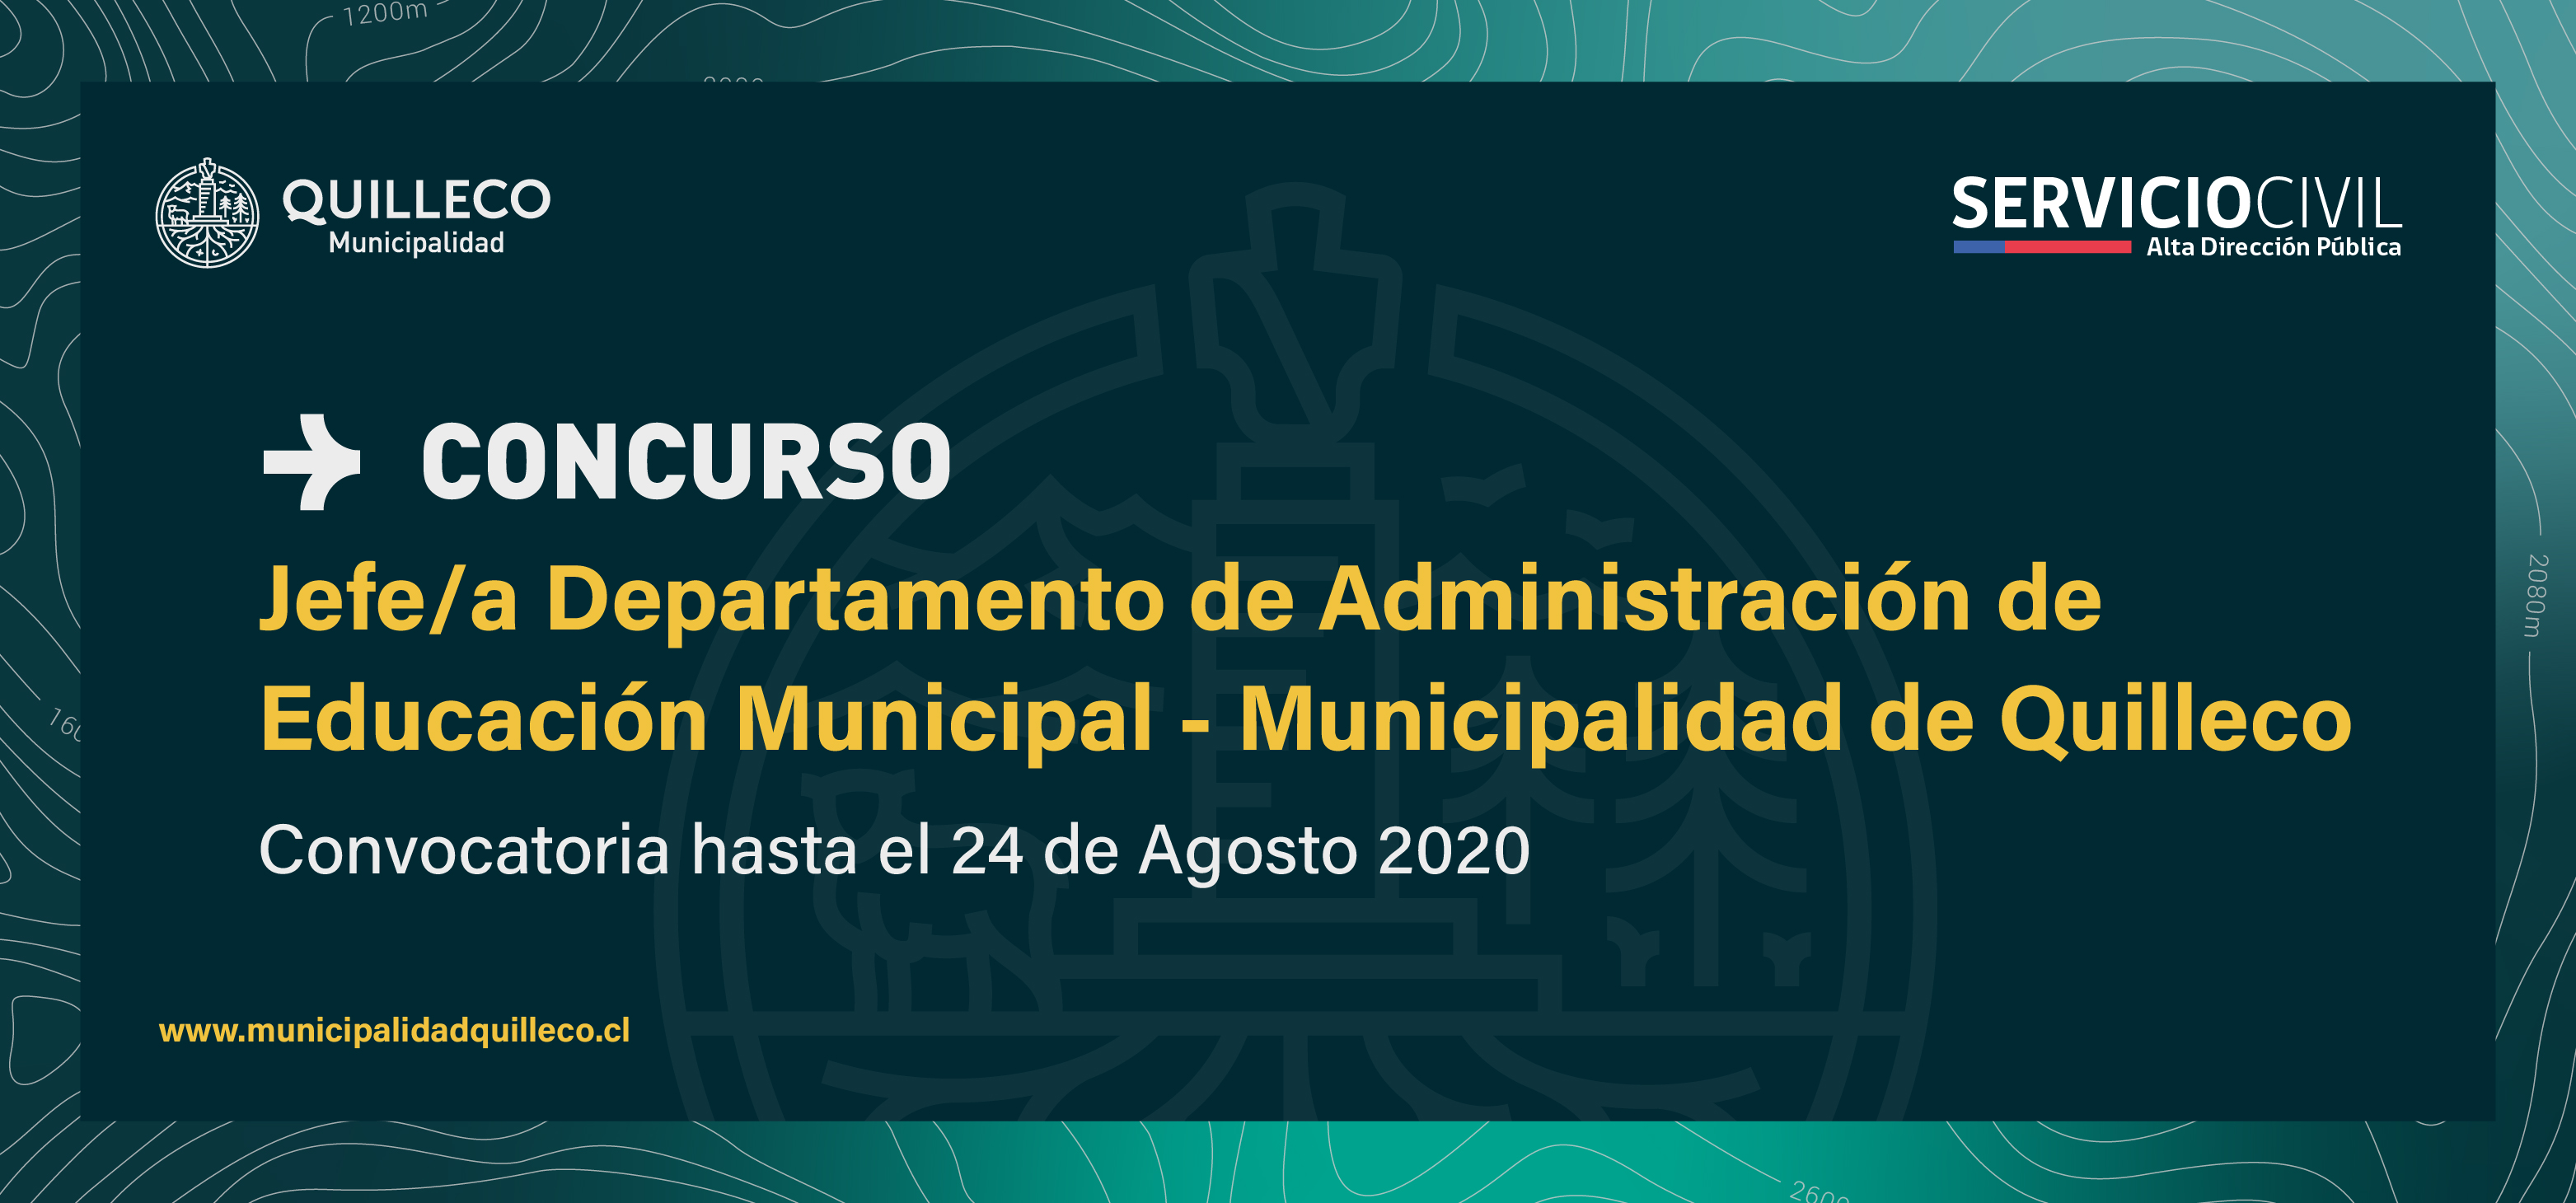 Concurso Público a Jefe/a del Departamento de Administración de Educación Municipal de Quilleco